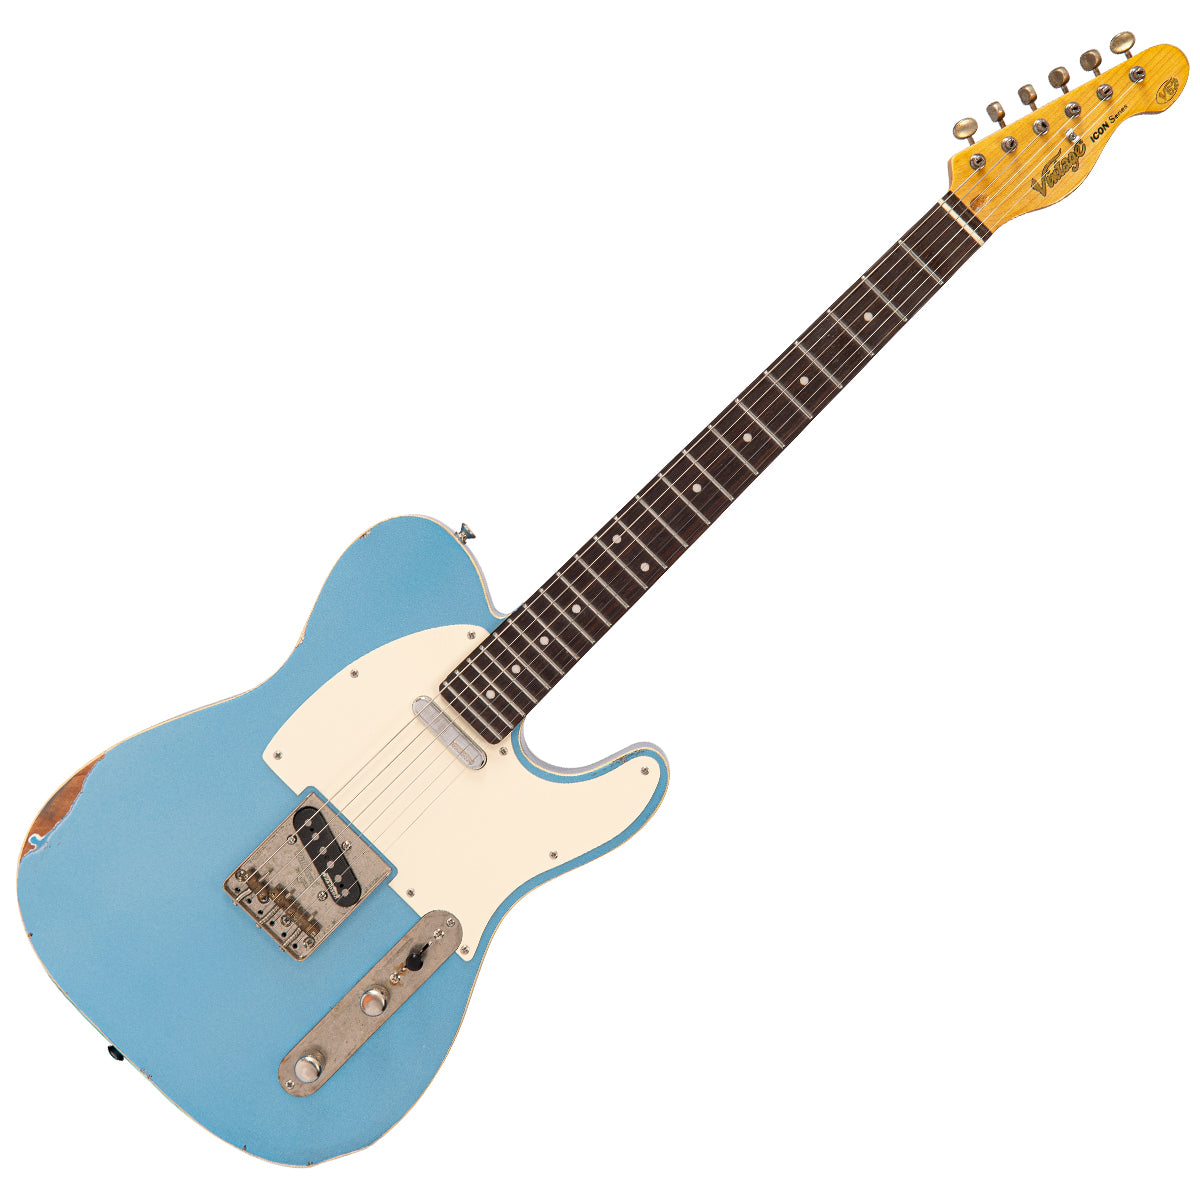 SOLD - Vintage V62 ProShop Unique ~ Blue Sparkle, Electrics for sale at Richards Guitars.